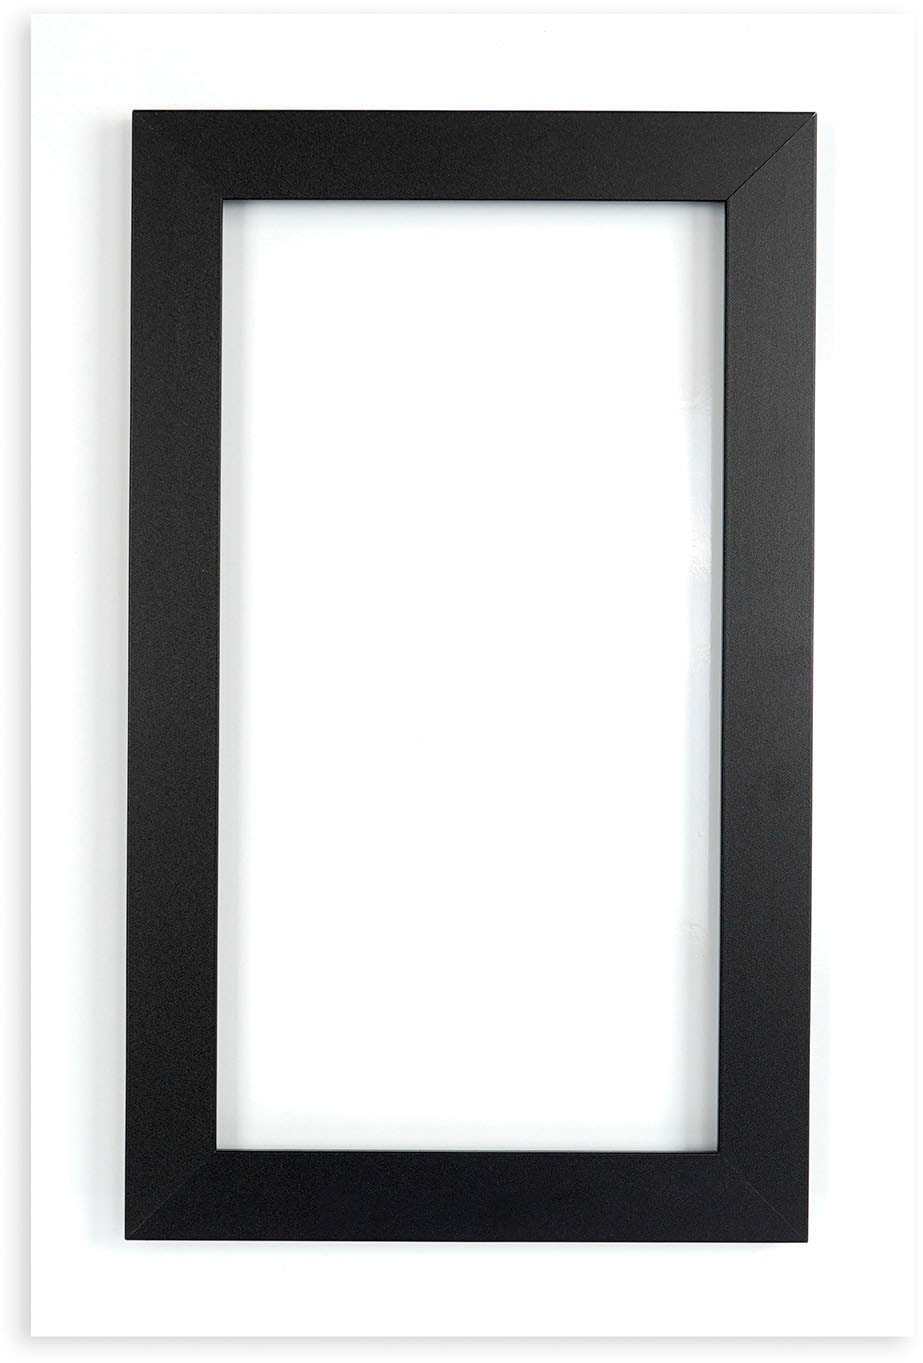 queence Acrylglasbild »Achat - Wandbild - Glasbild - Acrylbild - mit Aufhängesystem«, 60x40 cm - Freischwebende Optik